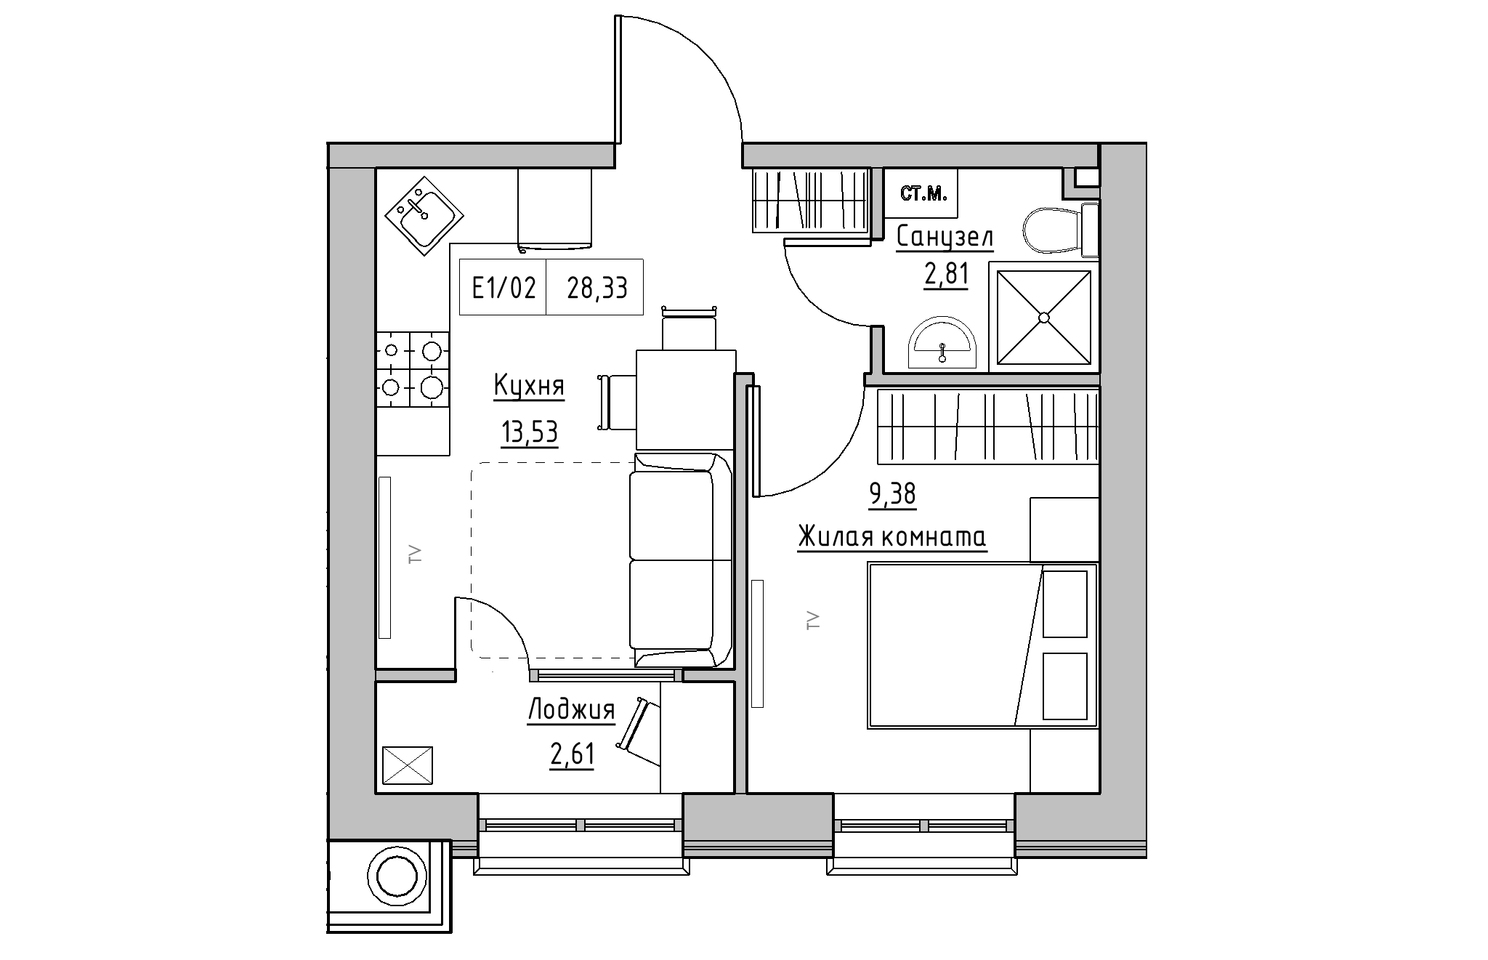 Планировка 1-к квартира площей 28.33м2, KS-010-02/0001.